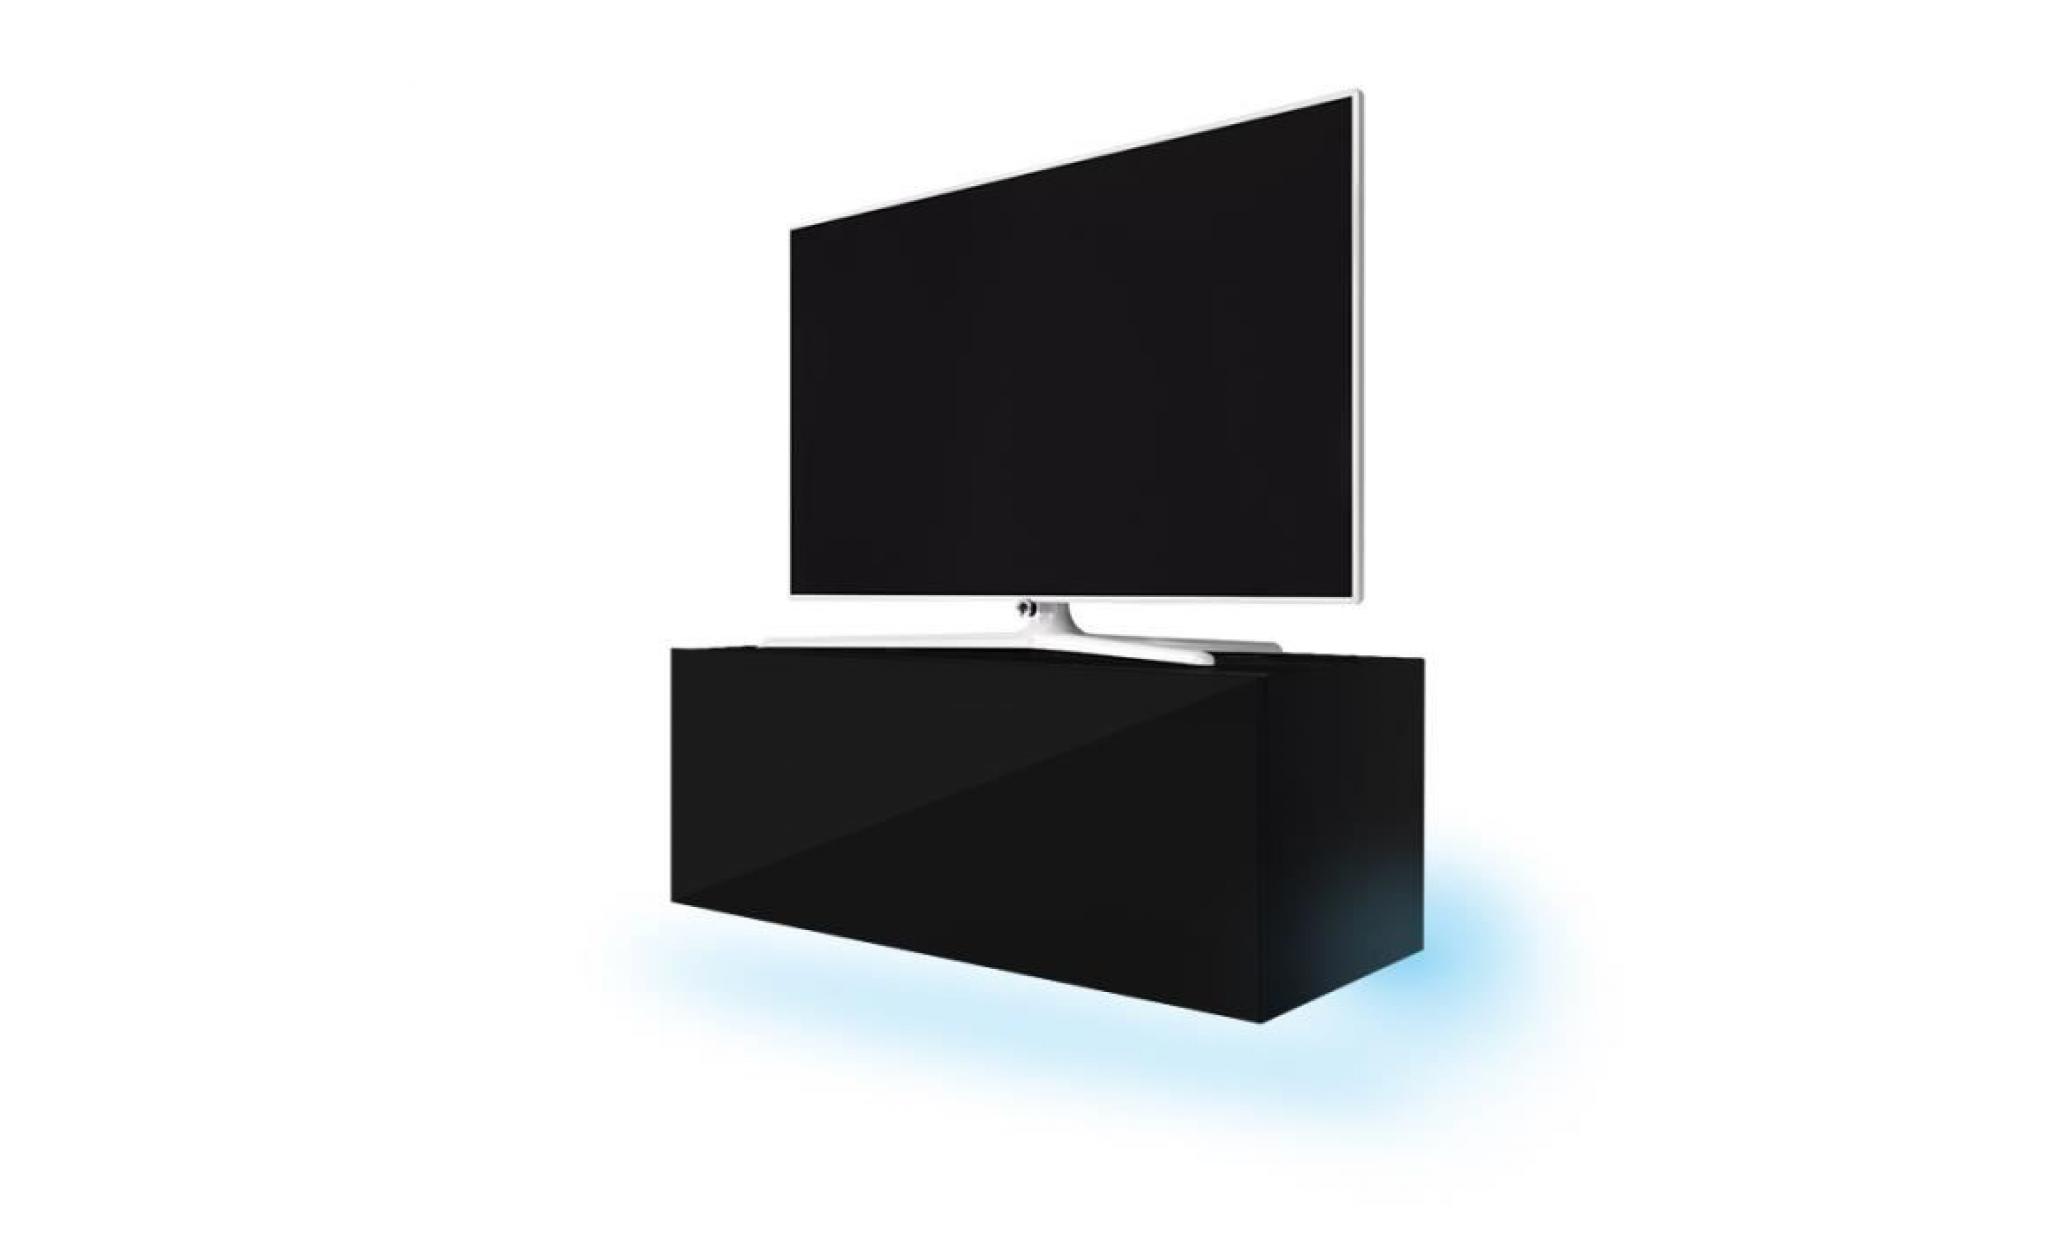 meuble tv / meuble de salon suspendu   lana   160 cm   noir mat / noir brillant   avec led   style moderne   style classique pas cher